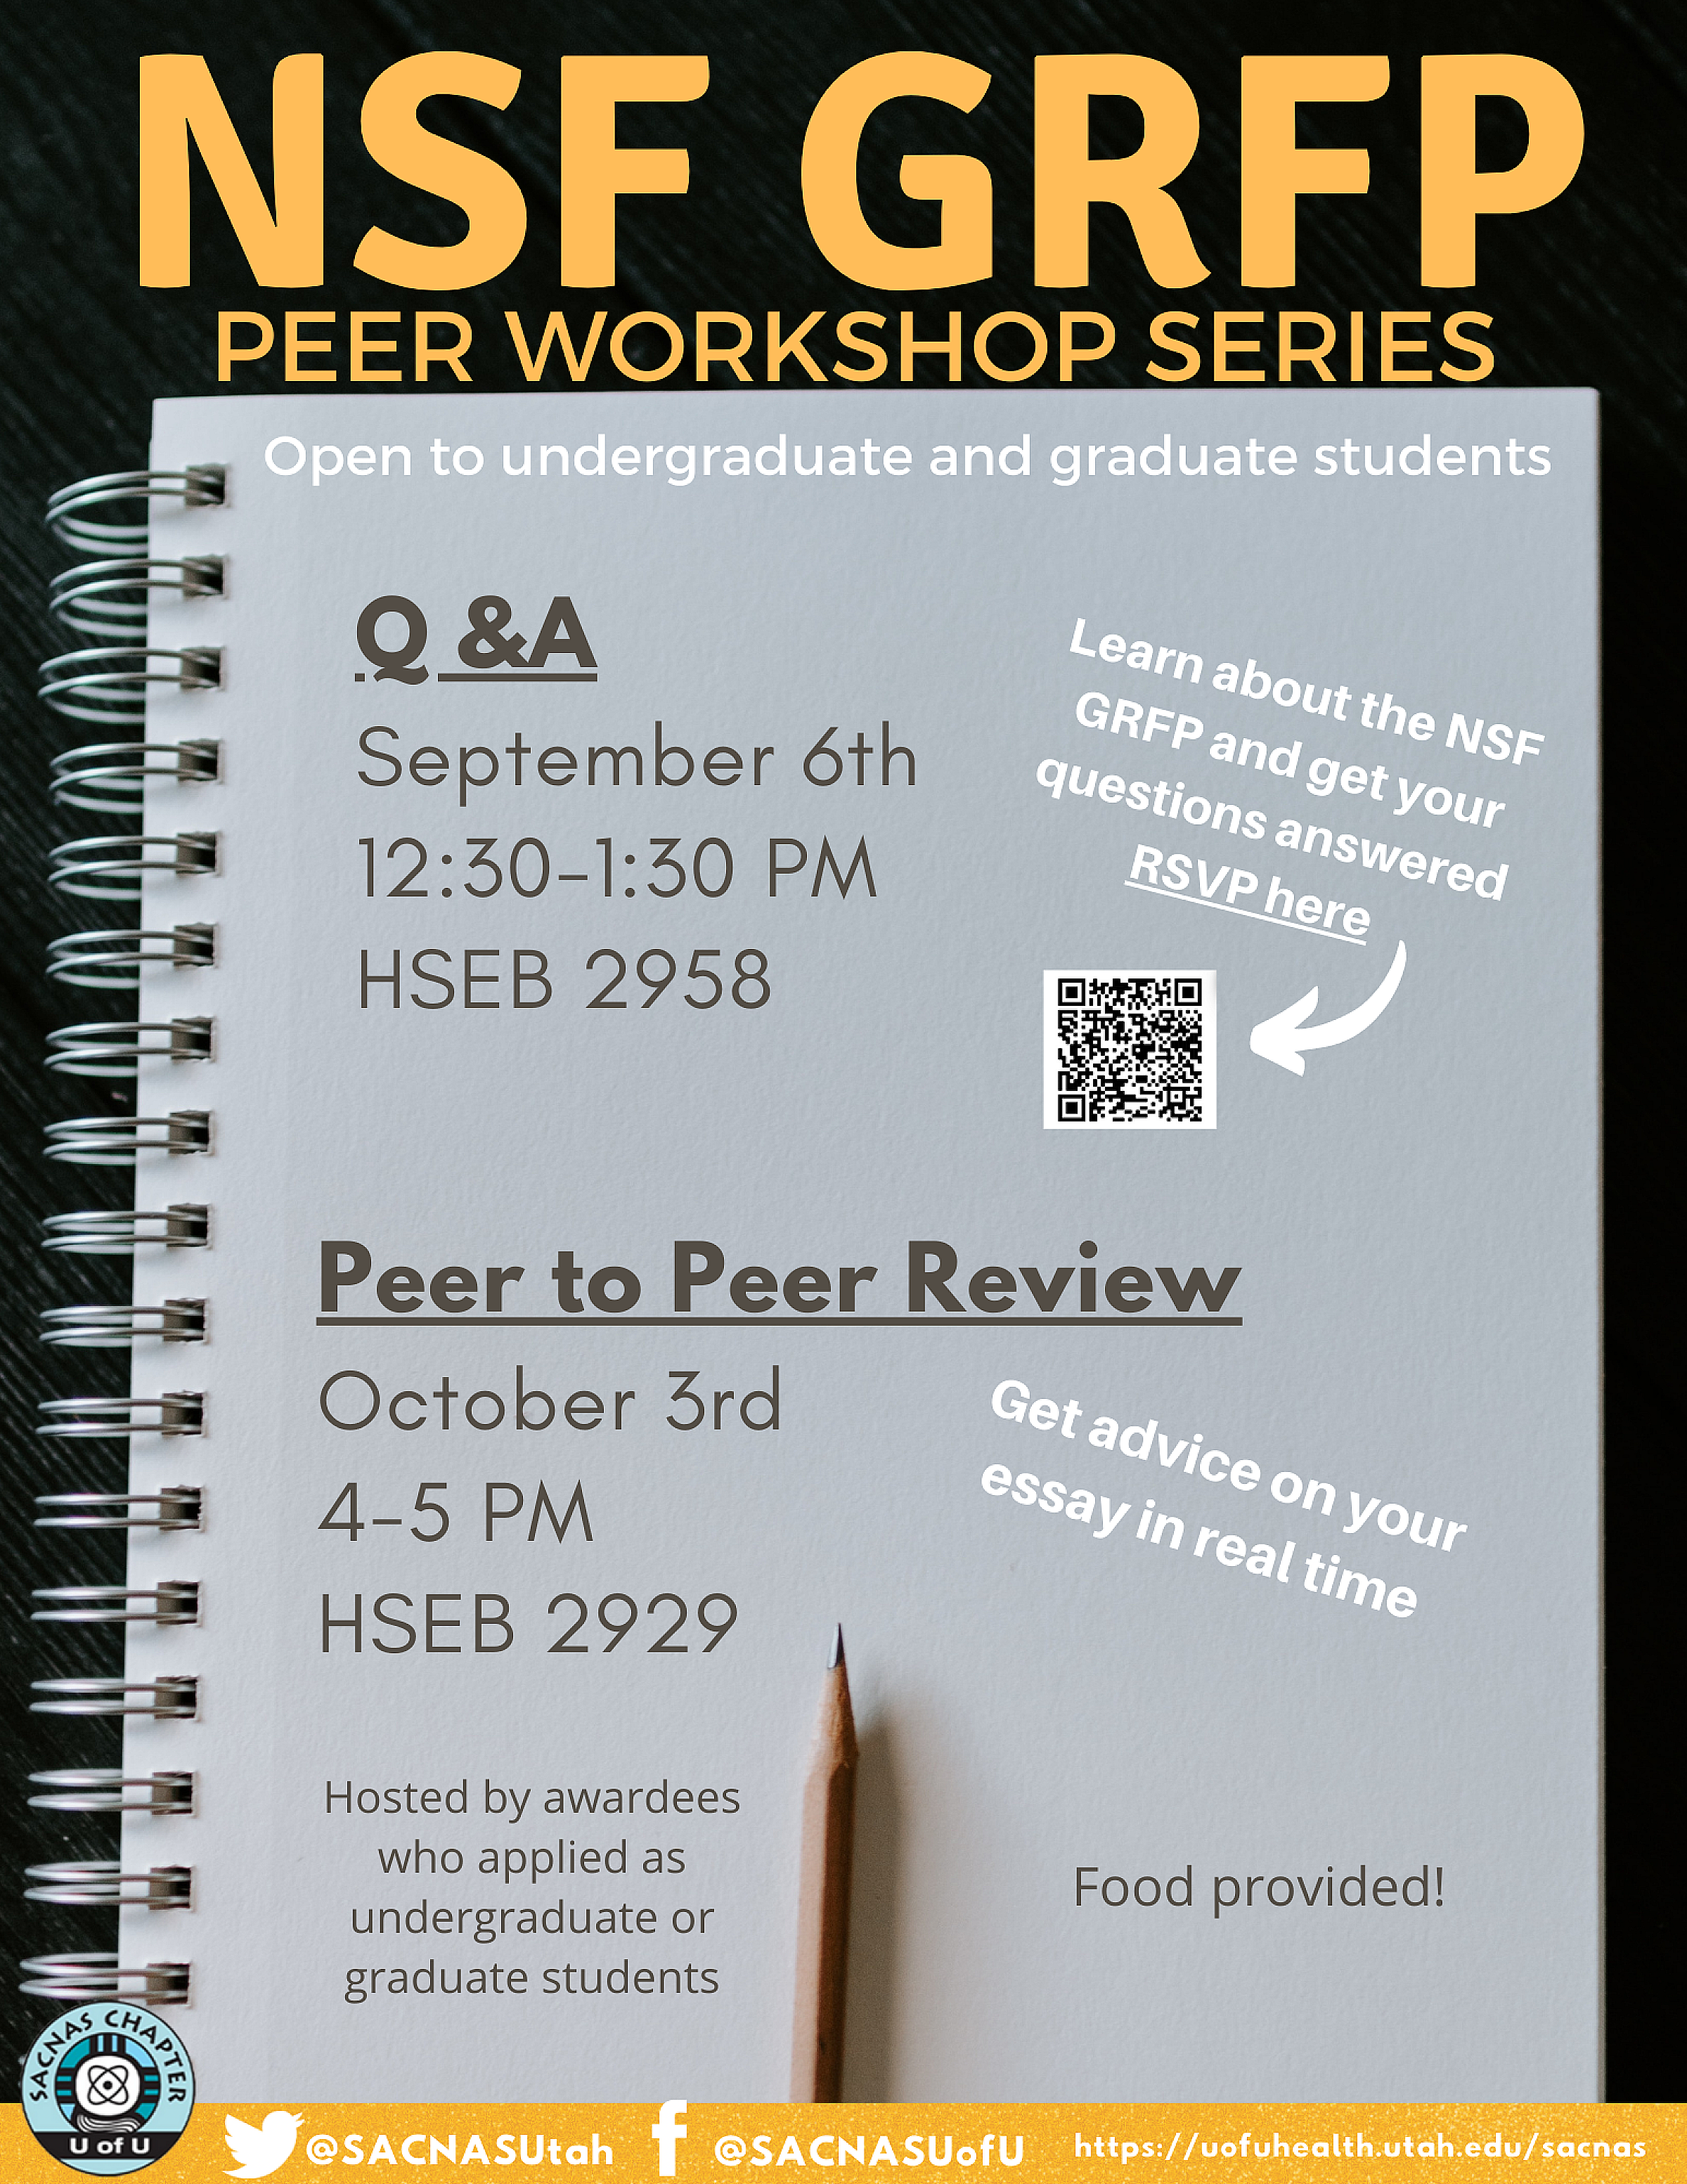 2022 NSF GRFP peer workshop series